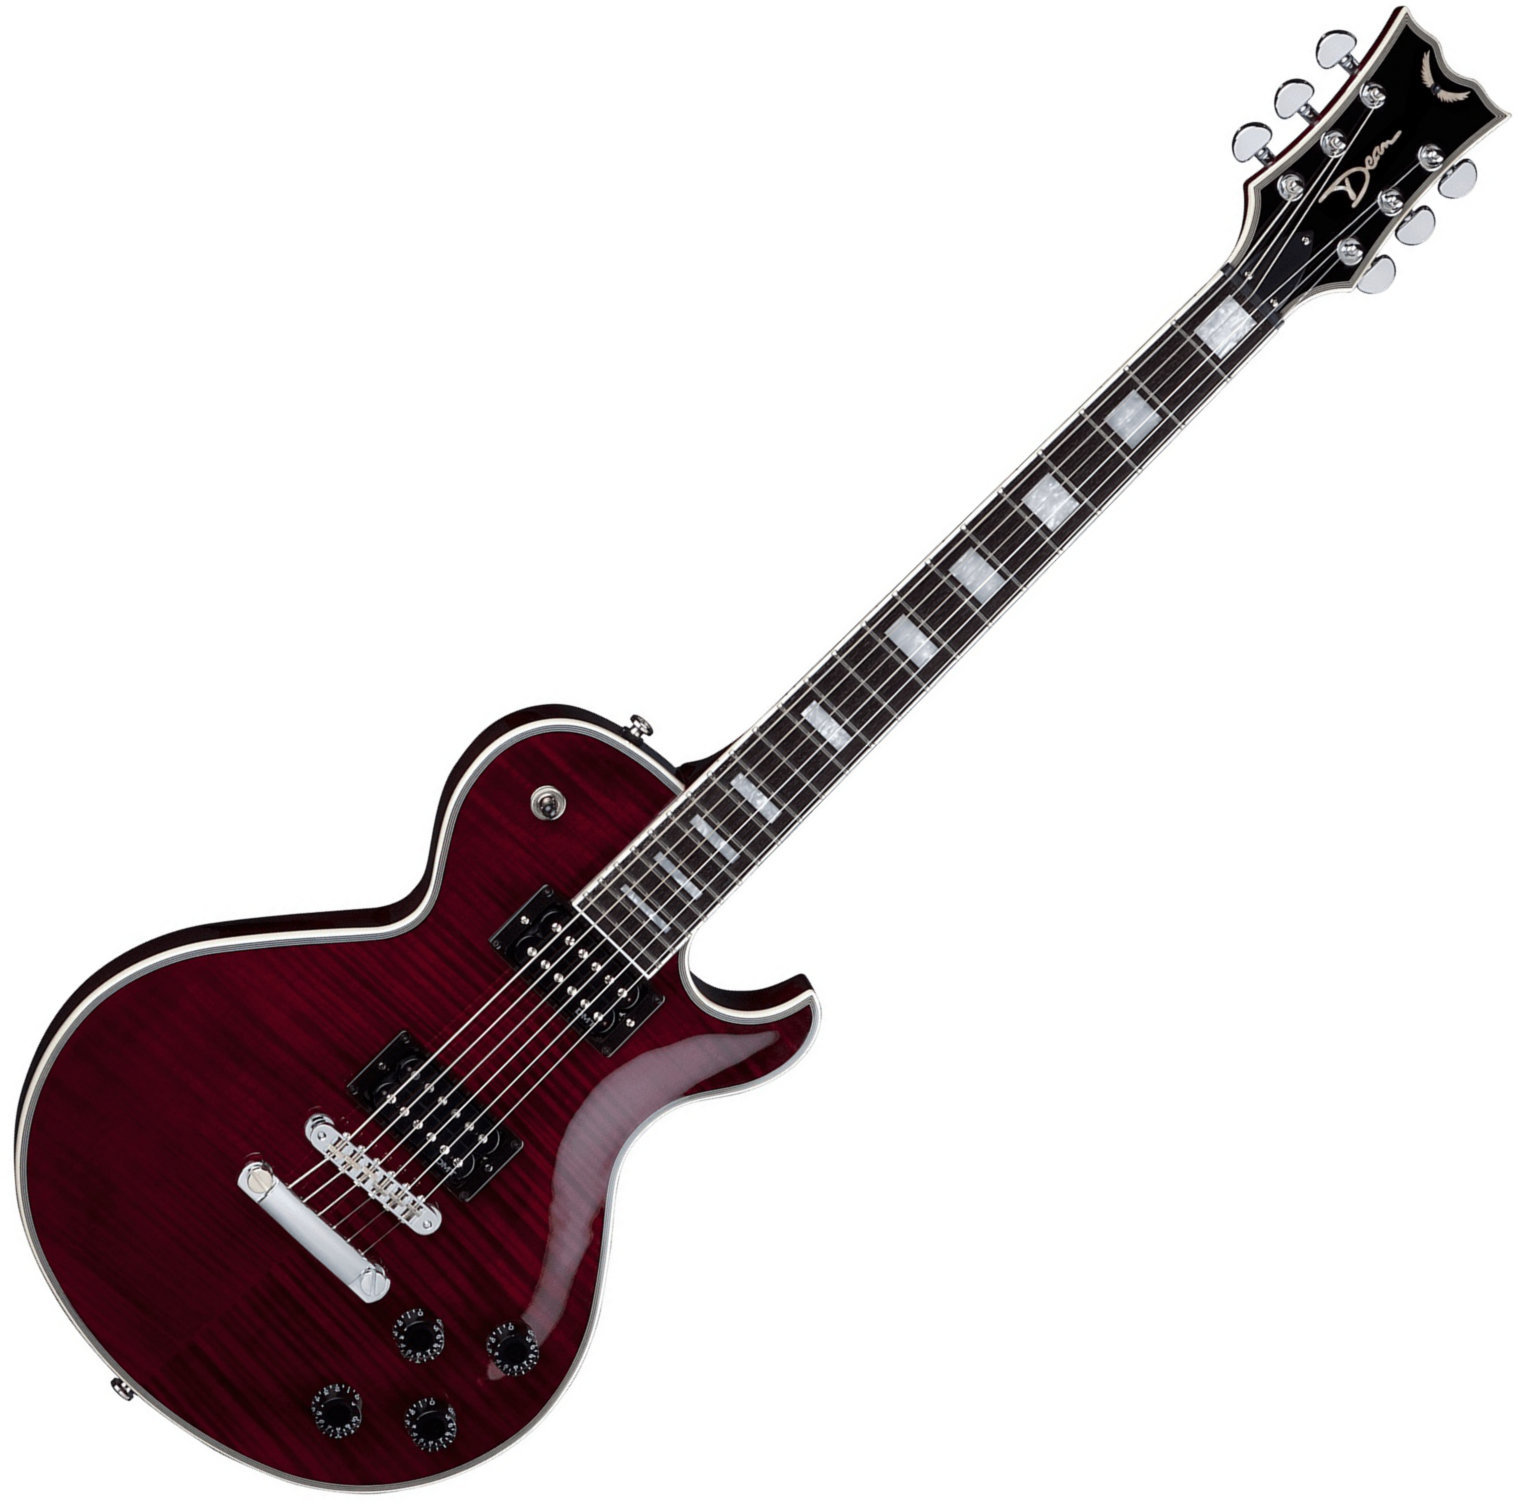 Ηλεκτρική Κιθάρα Dean Guitars Thoroughbred Deluxe - Scary Cherry